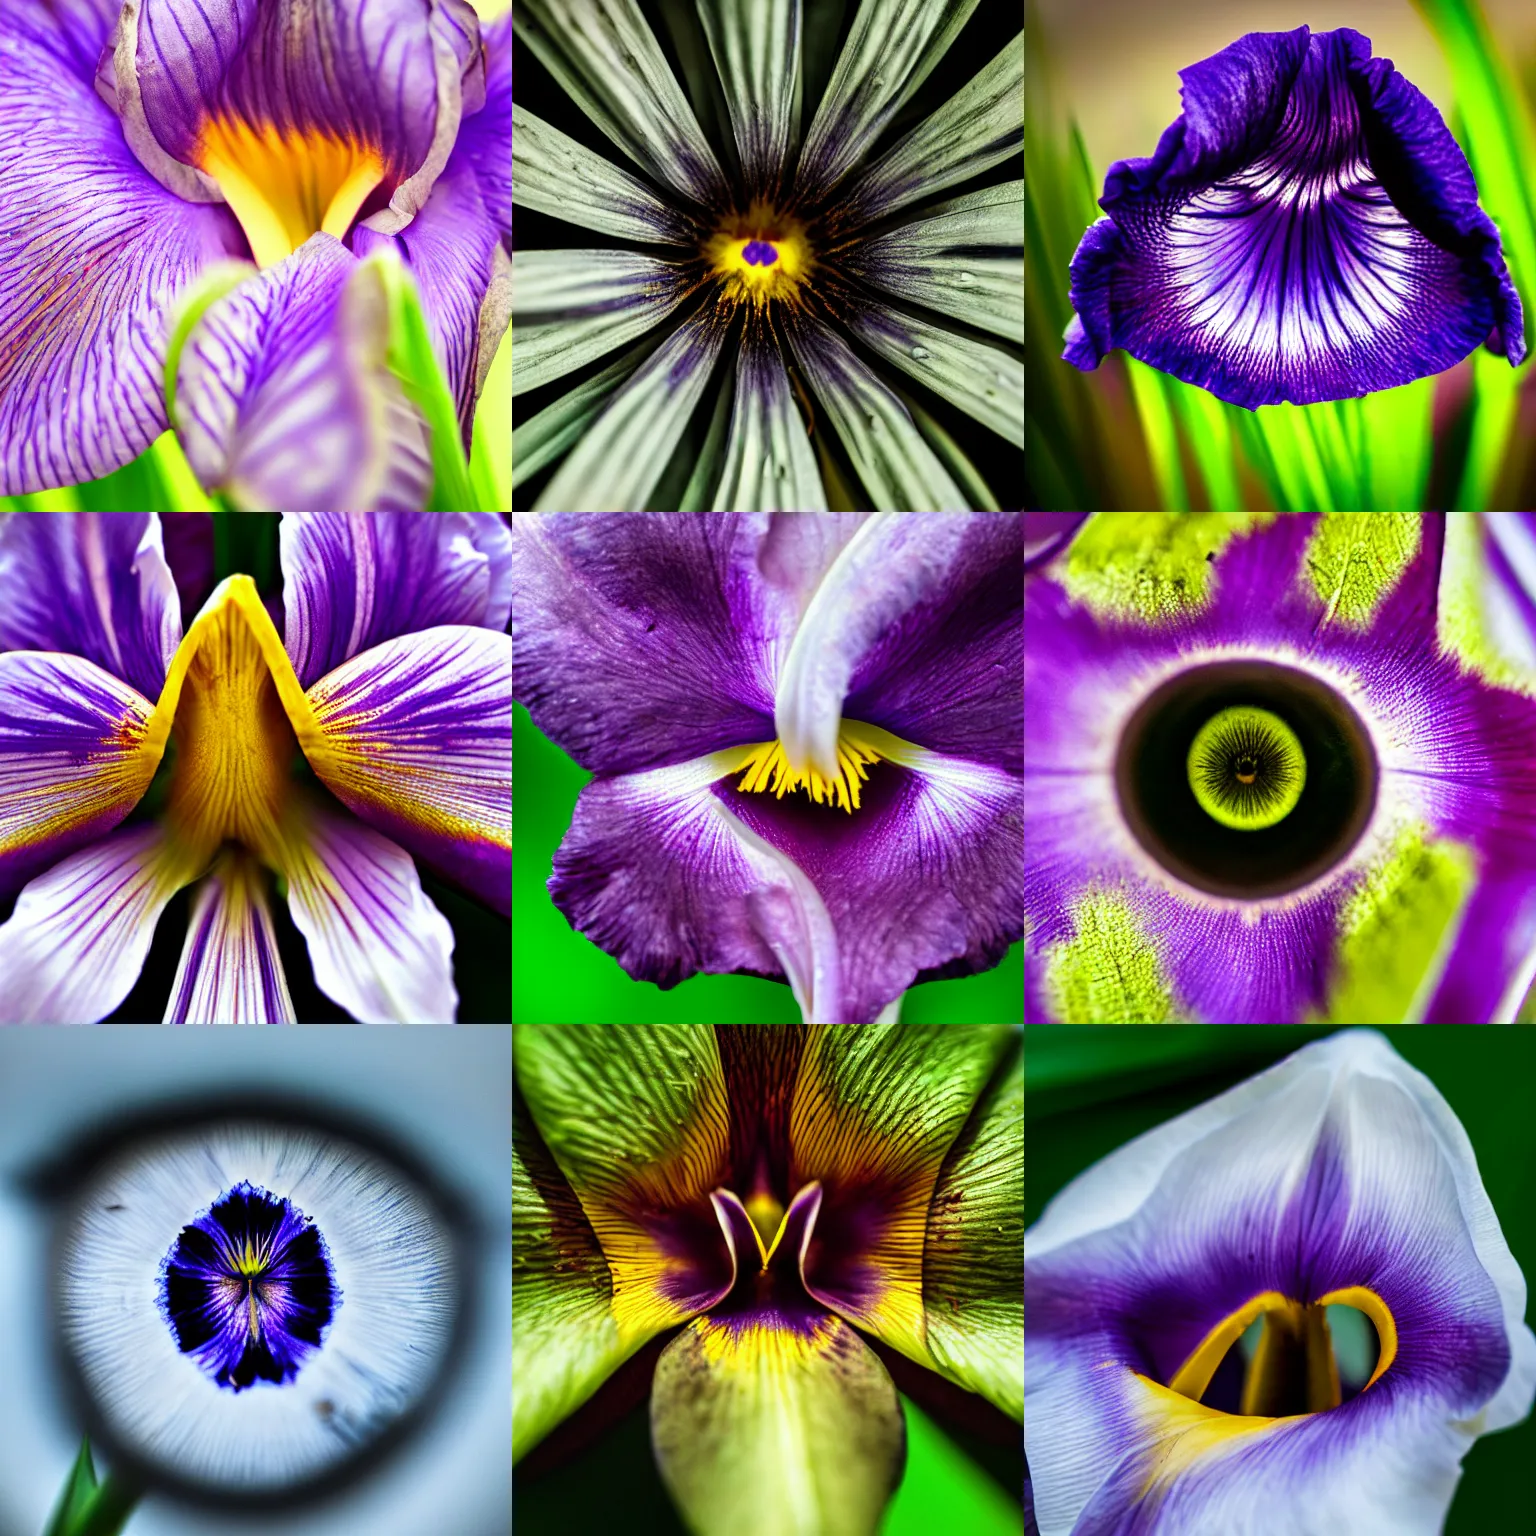 Prompt: macro photography eye triangular iris